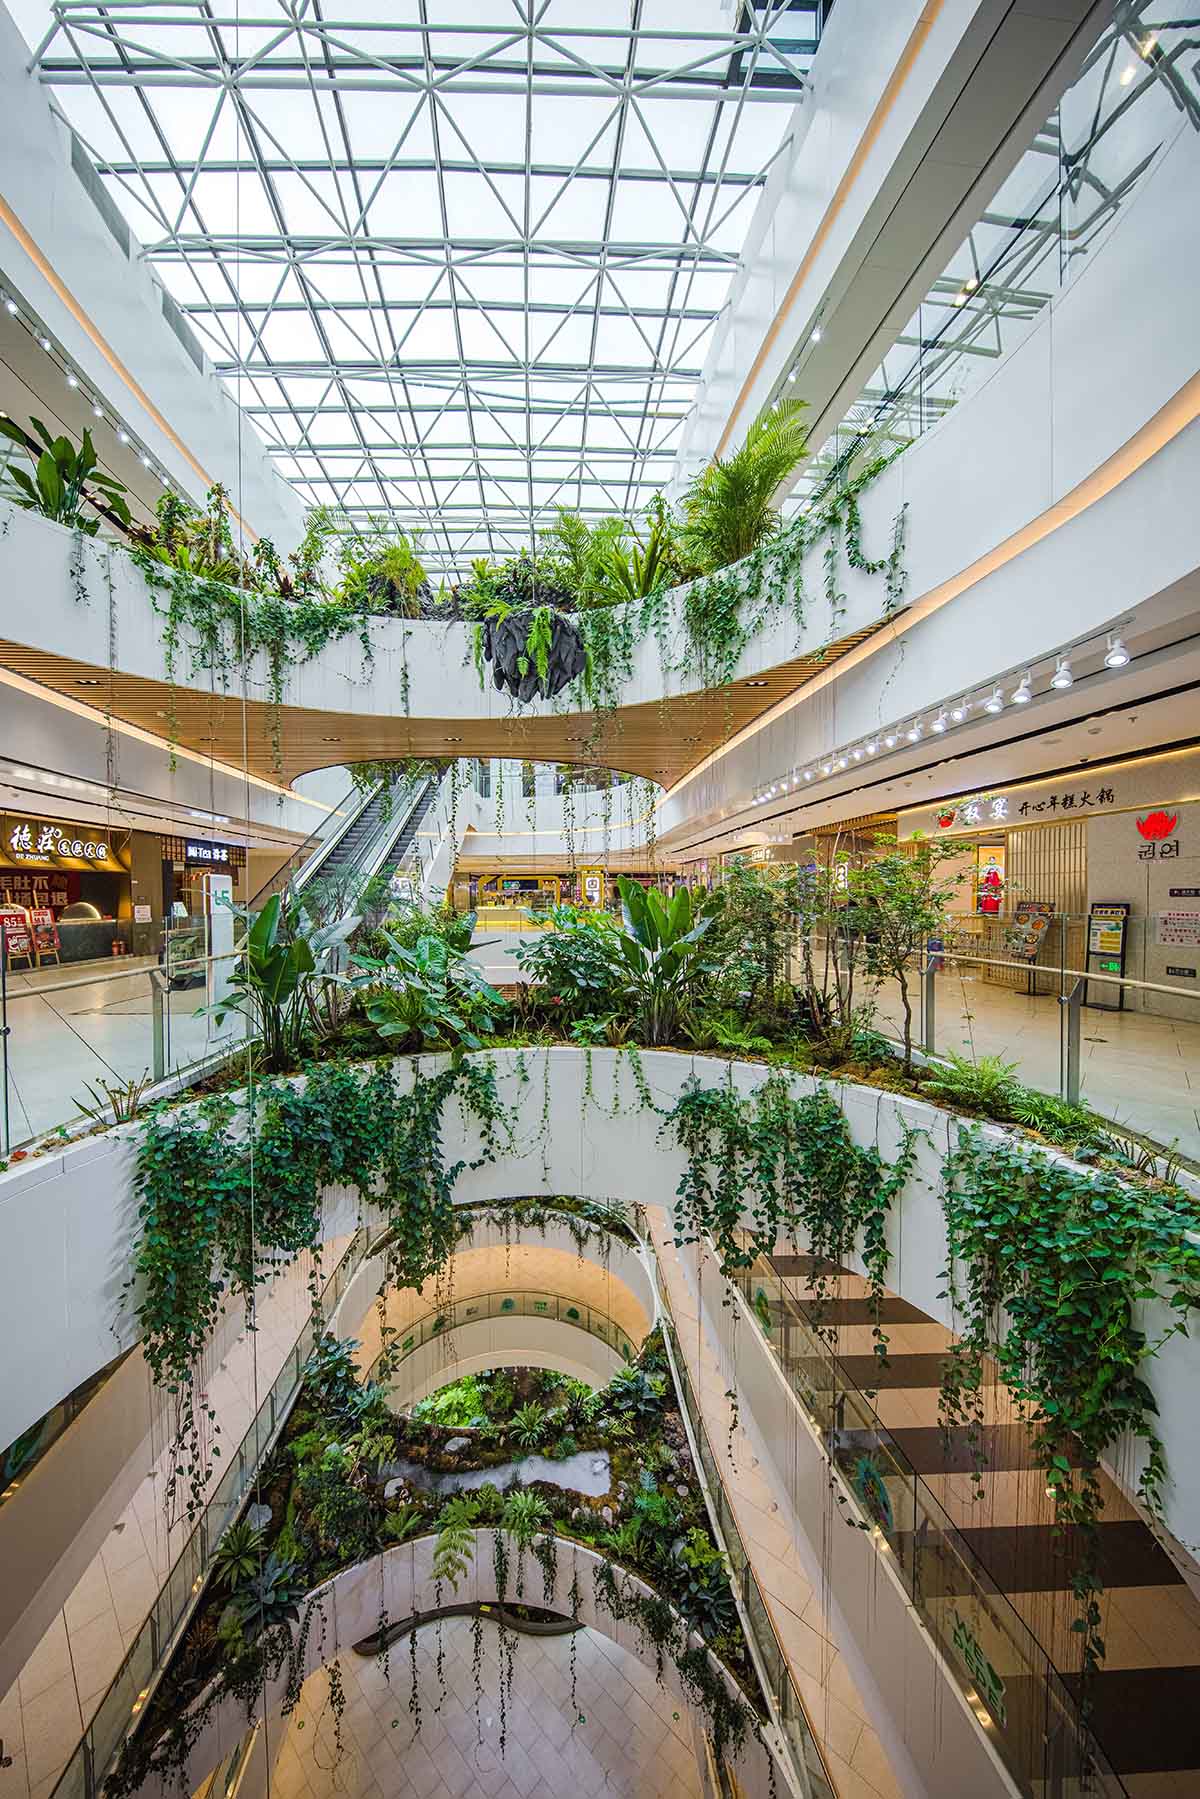 Gardens Mall - Upper Level